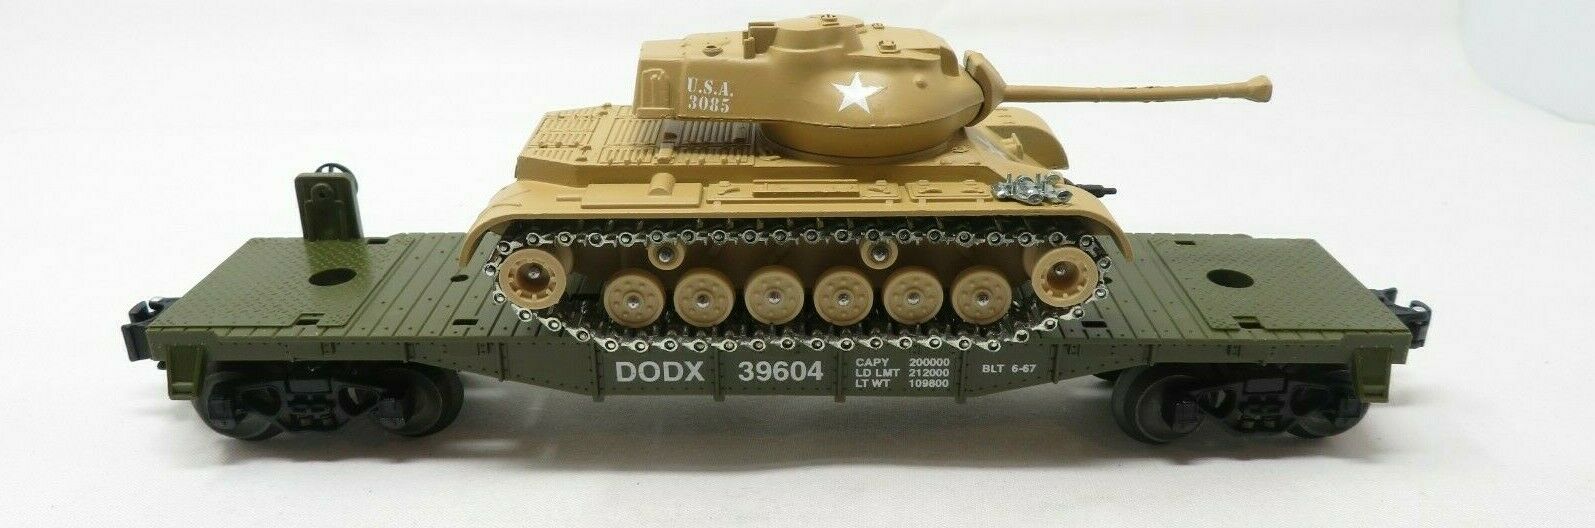 Geller 39167 Army Patton Tank USAX Flatcar NIB